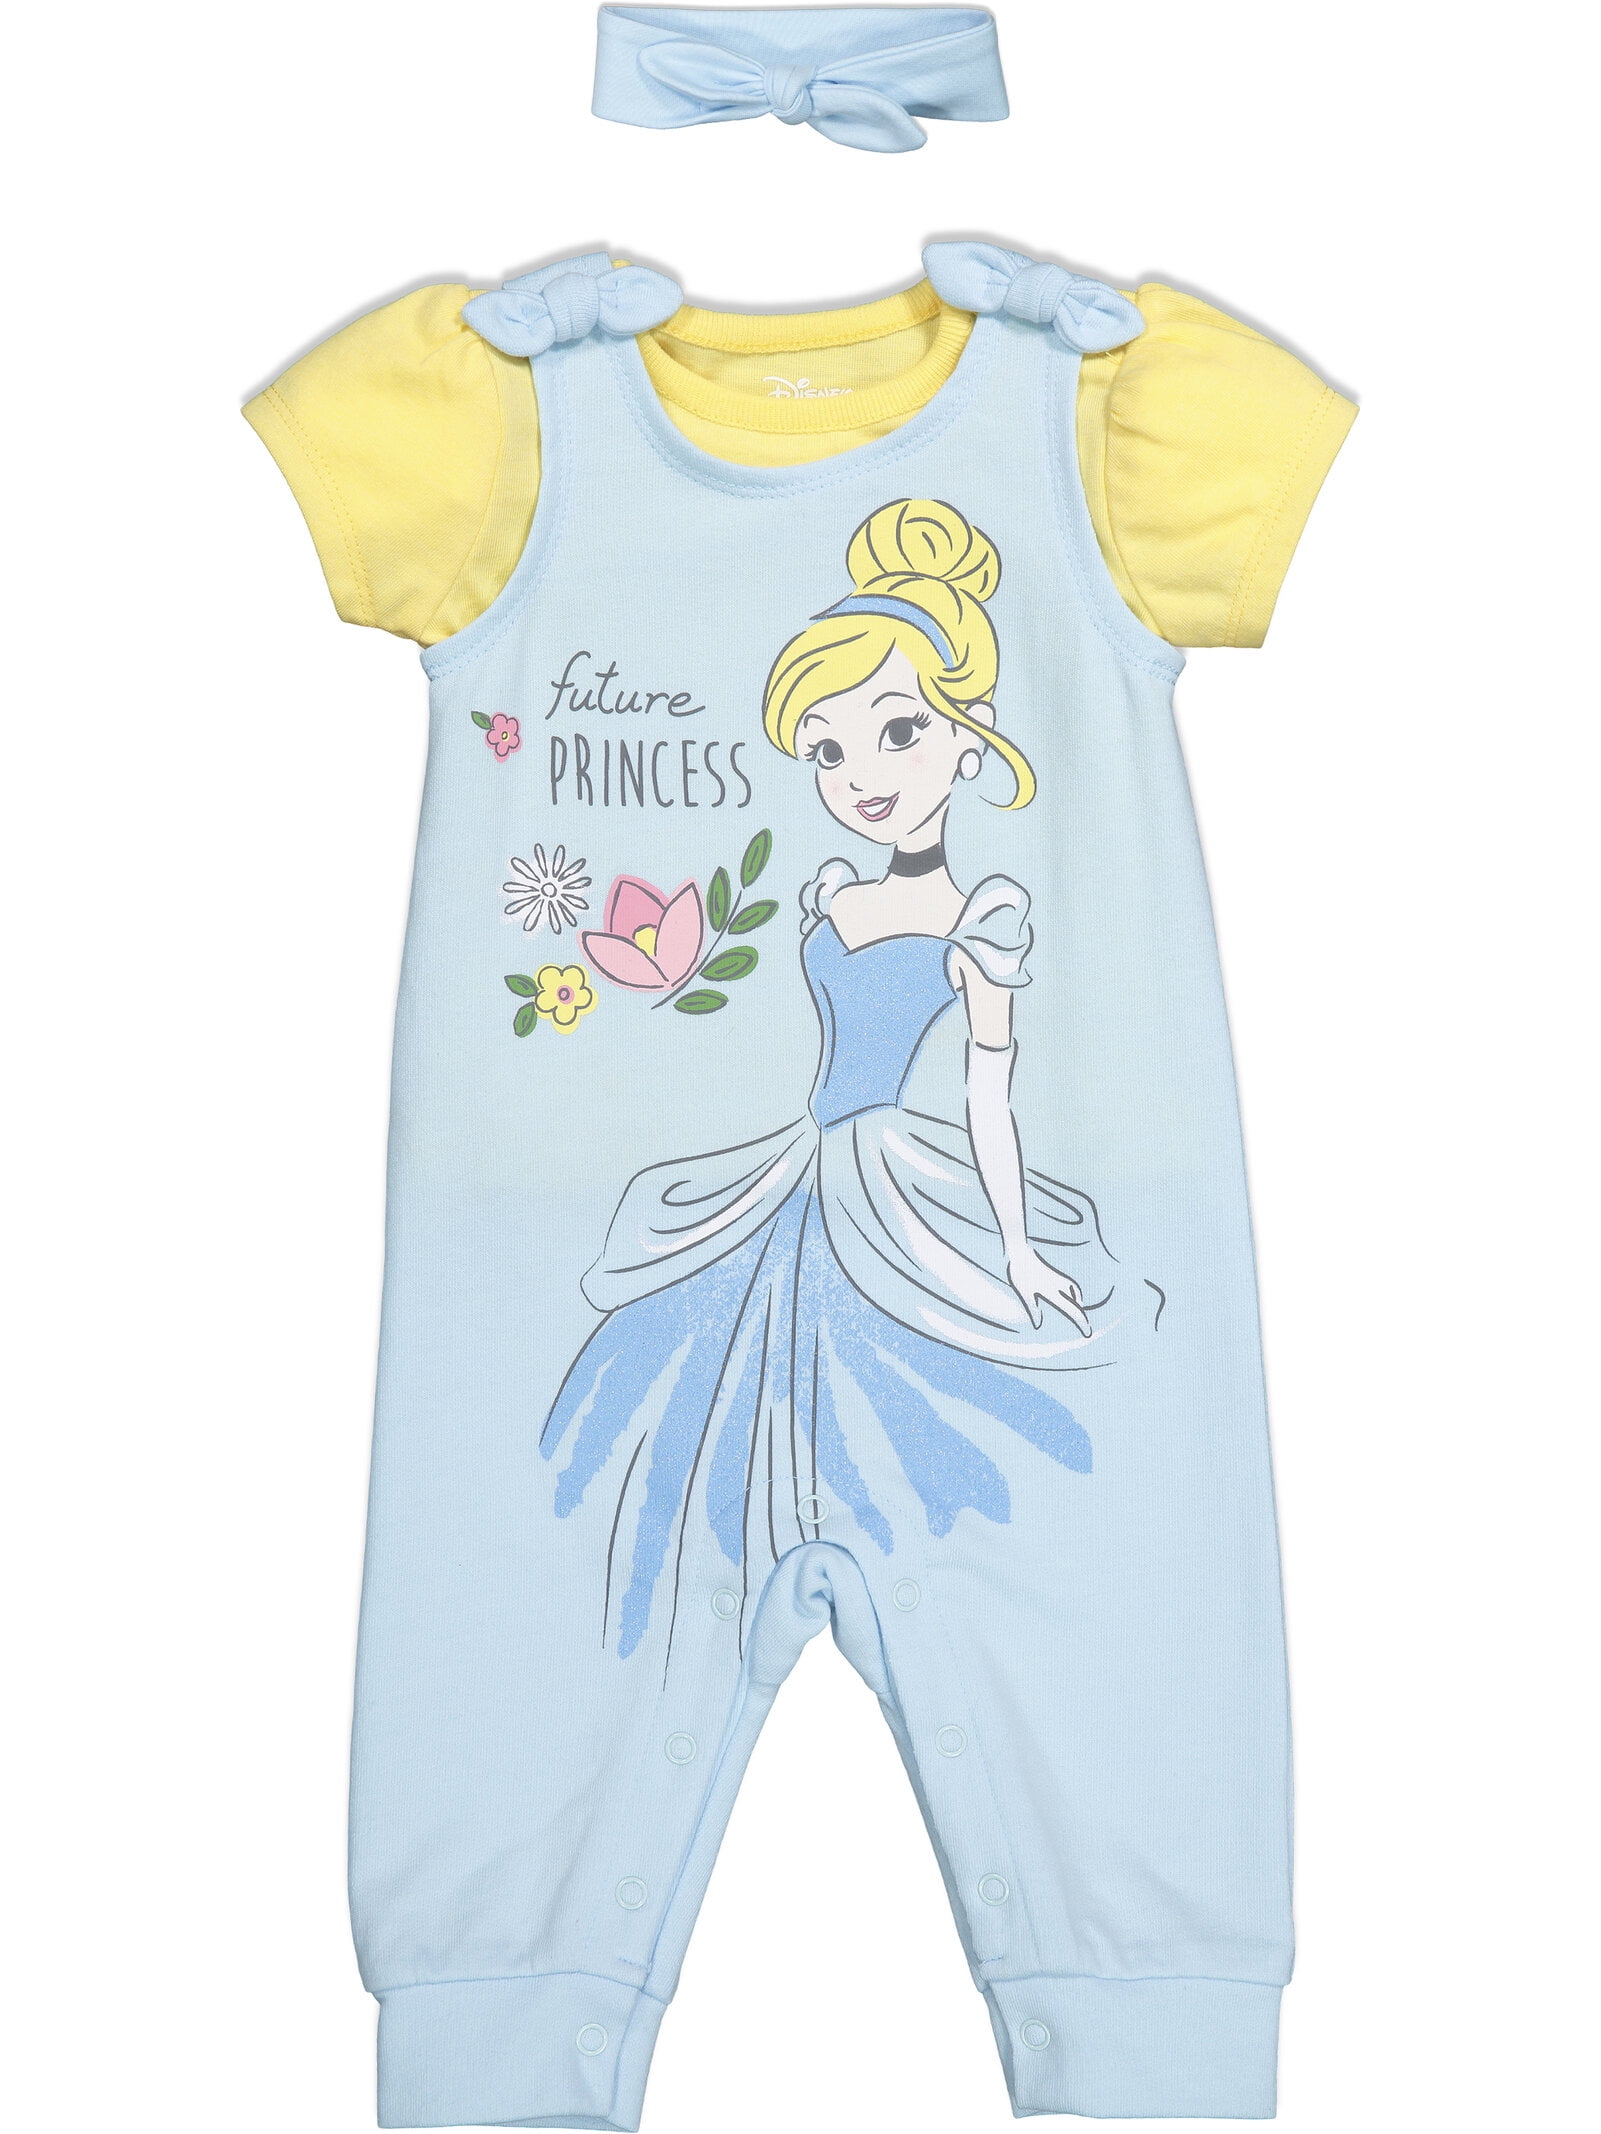 Disney Baby Cinderella Girls Size 3-6 Months 3-Piece Outfit 